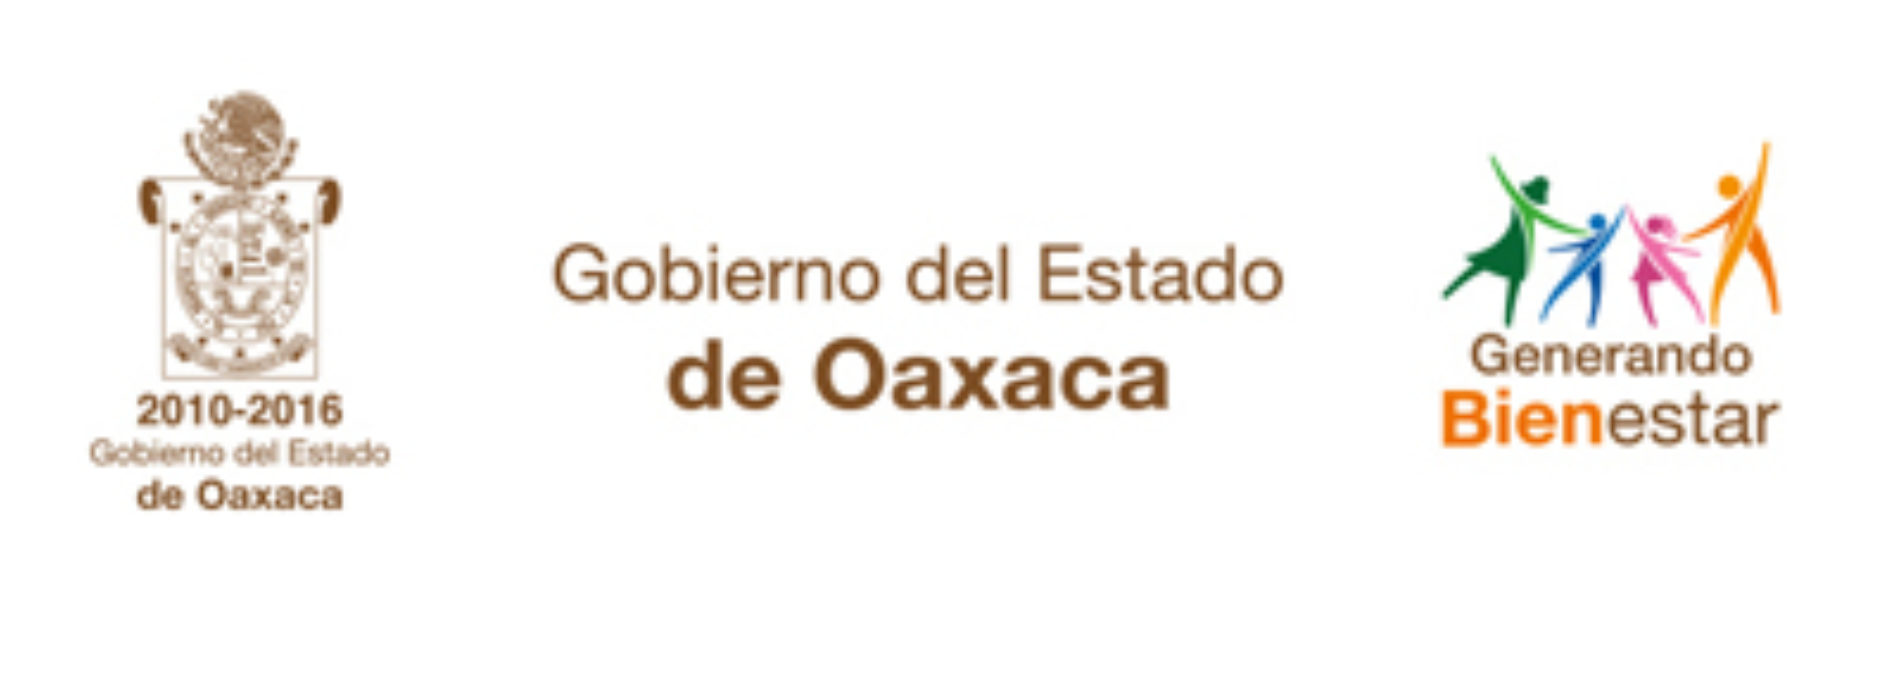 Pemex reitera su compromiso de abastecer de gasolina y otros combustibles a la población afectada por los bloqueos en Oaxaca